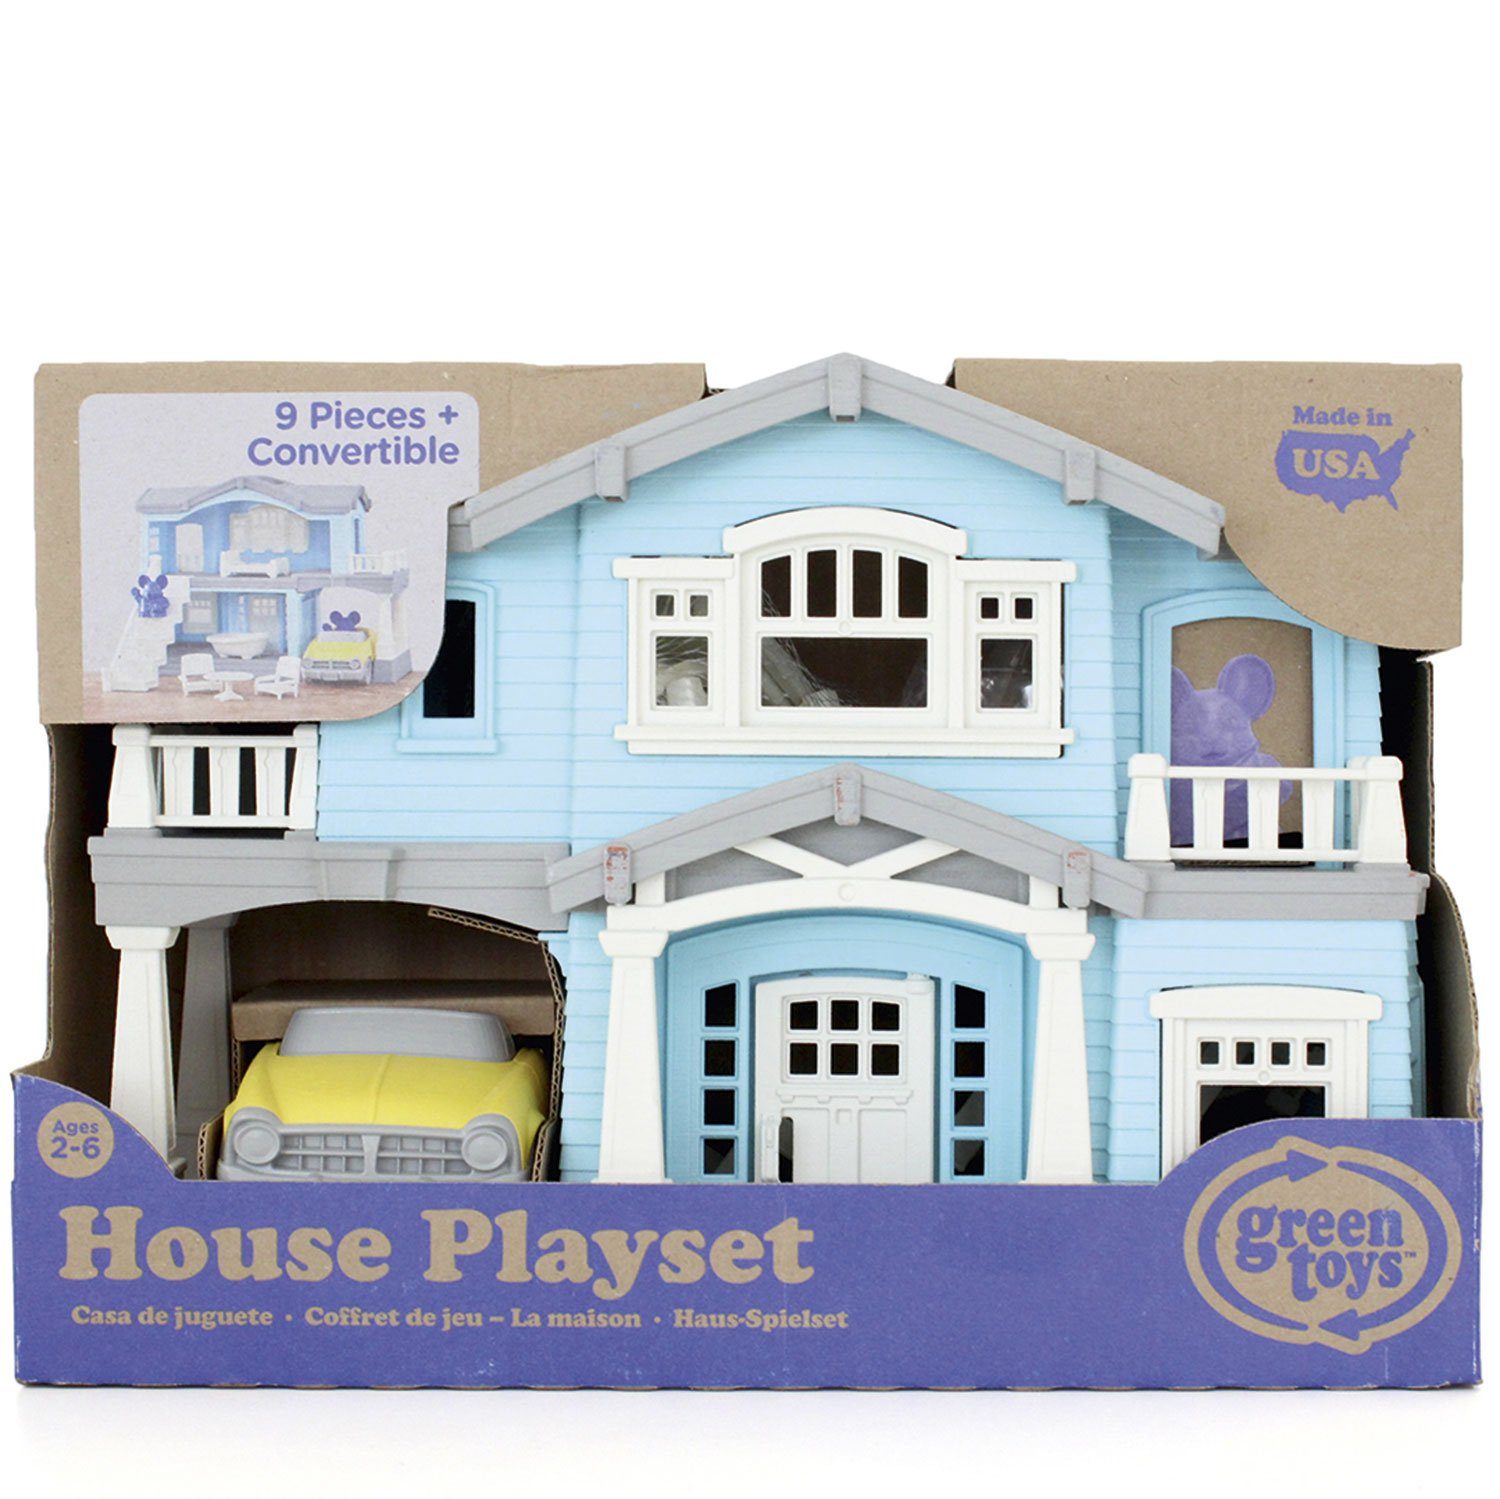 LeNoSa Puppenhaus Spielset - Rollenspielzeug für Kinder • Spielhaus 100% recycelt, (10-tlg)